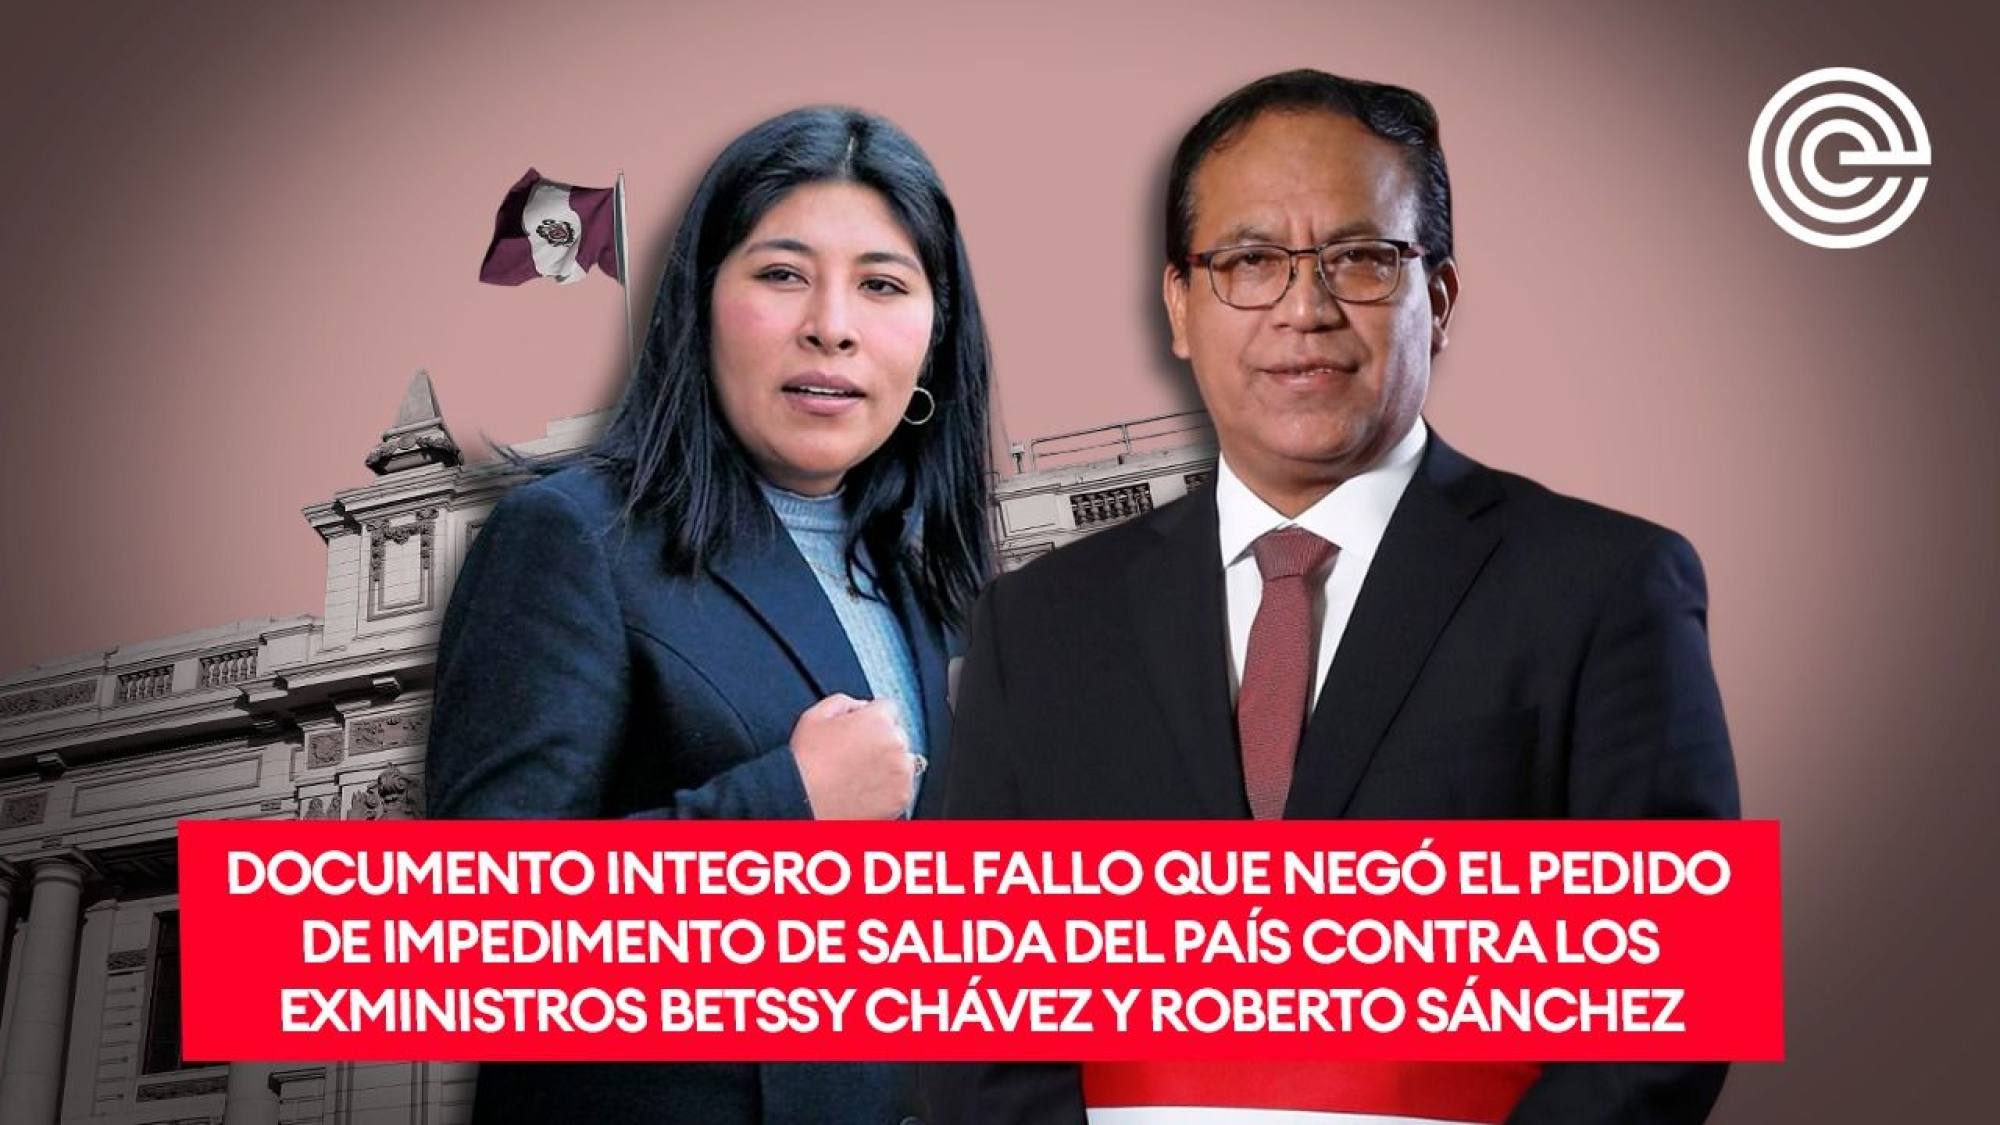 Documento integro del fallo que negó el pedido de impedimento de salida del país contra Betssy Chávez y Roberto Sánchez, Epicentro TV